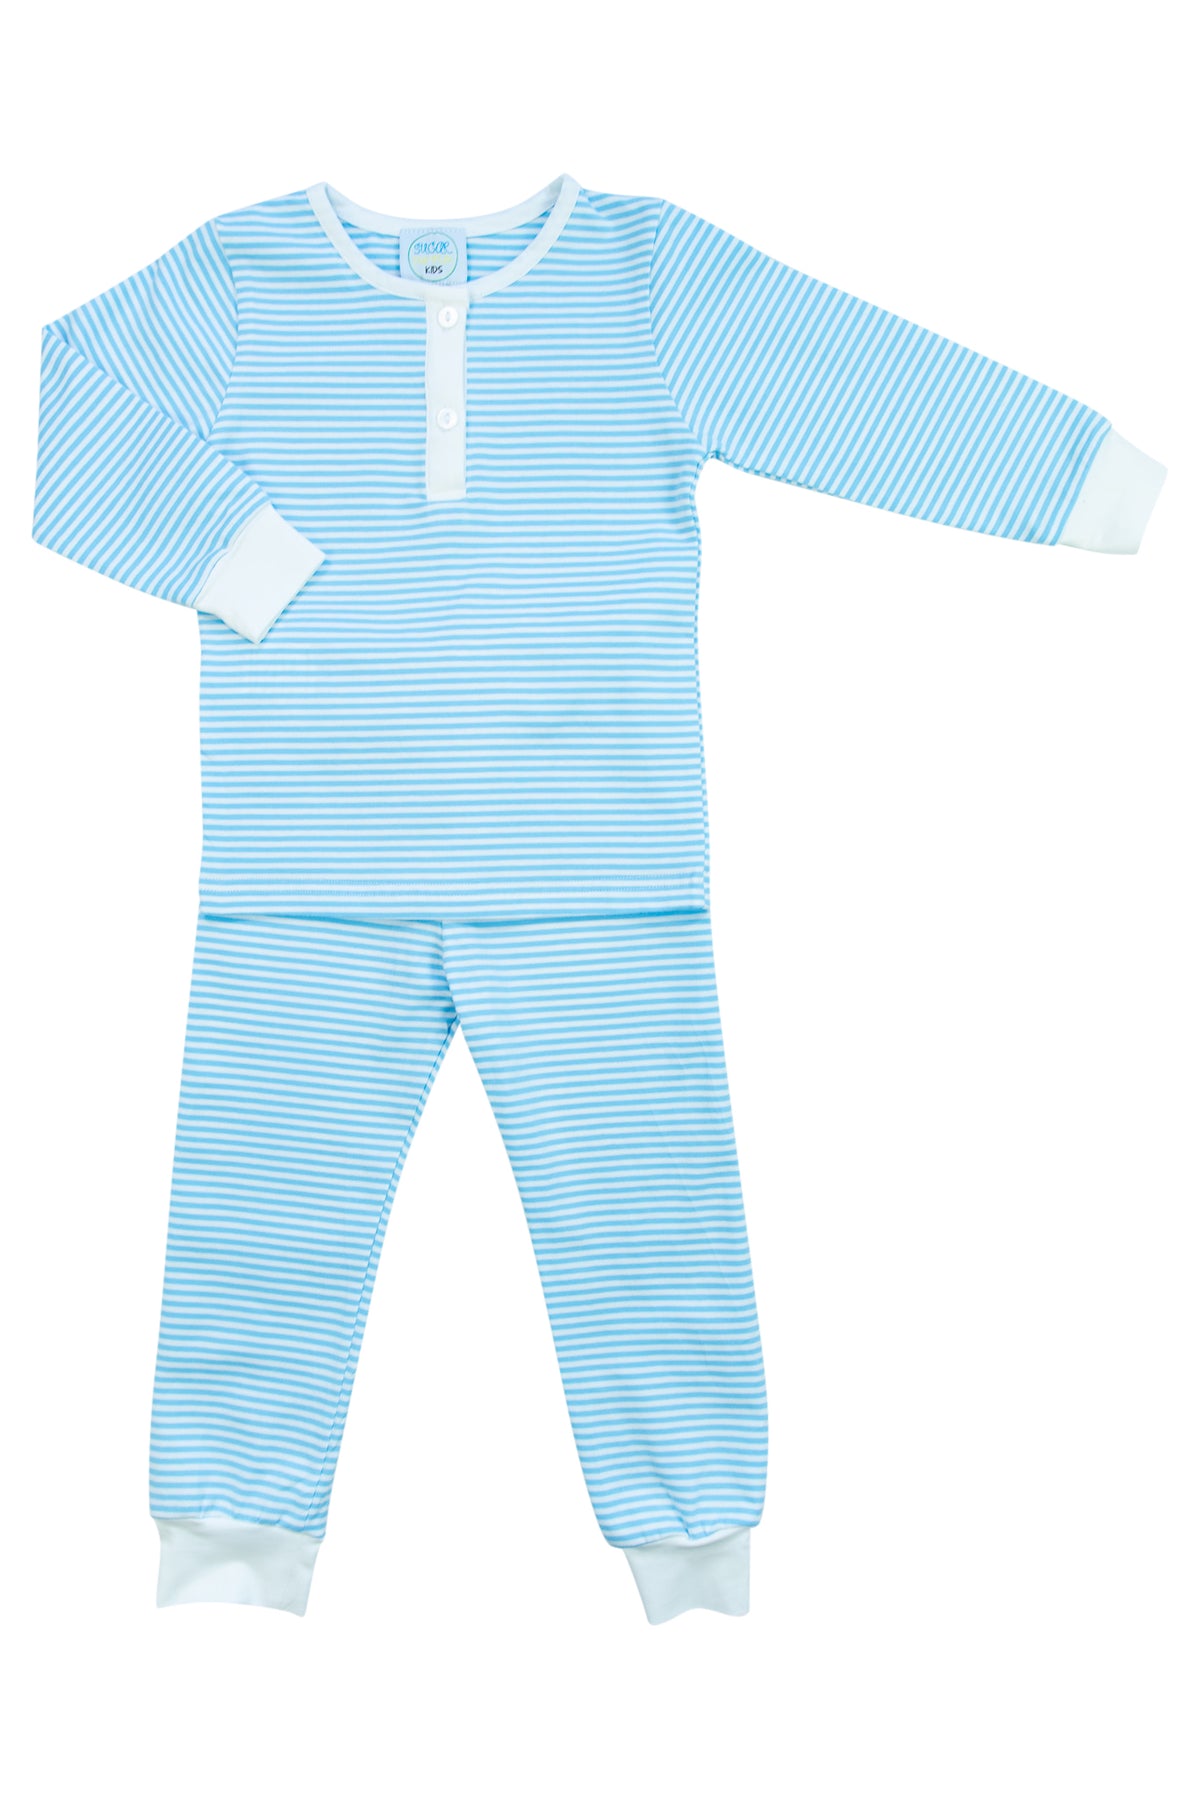 Boys Blue Stripe PJ Pants Set